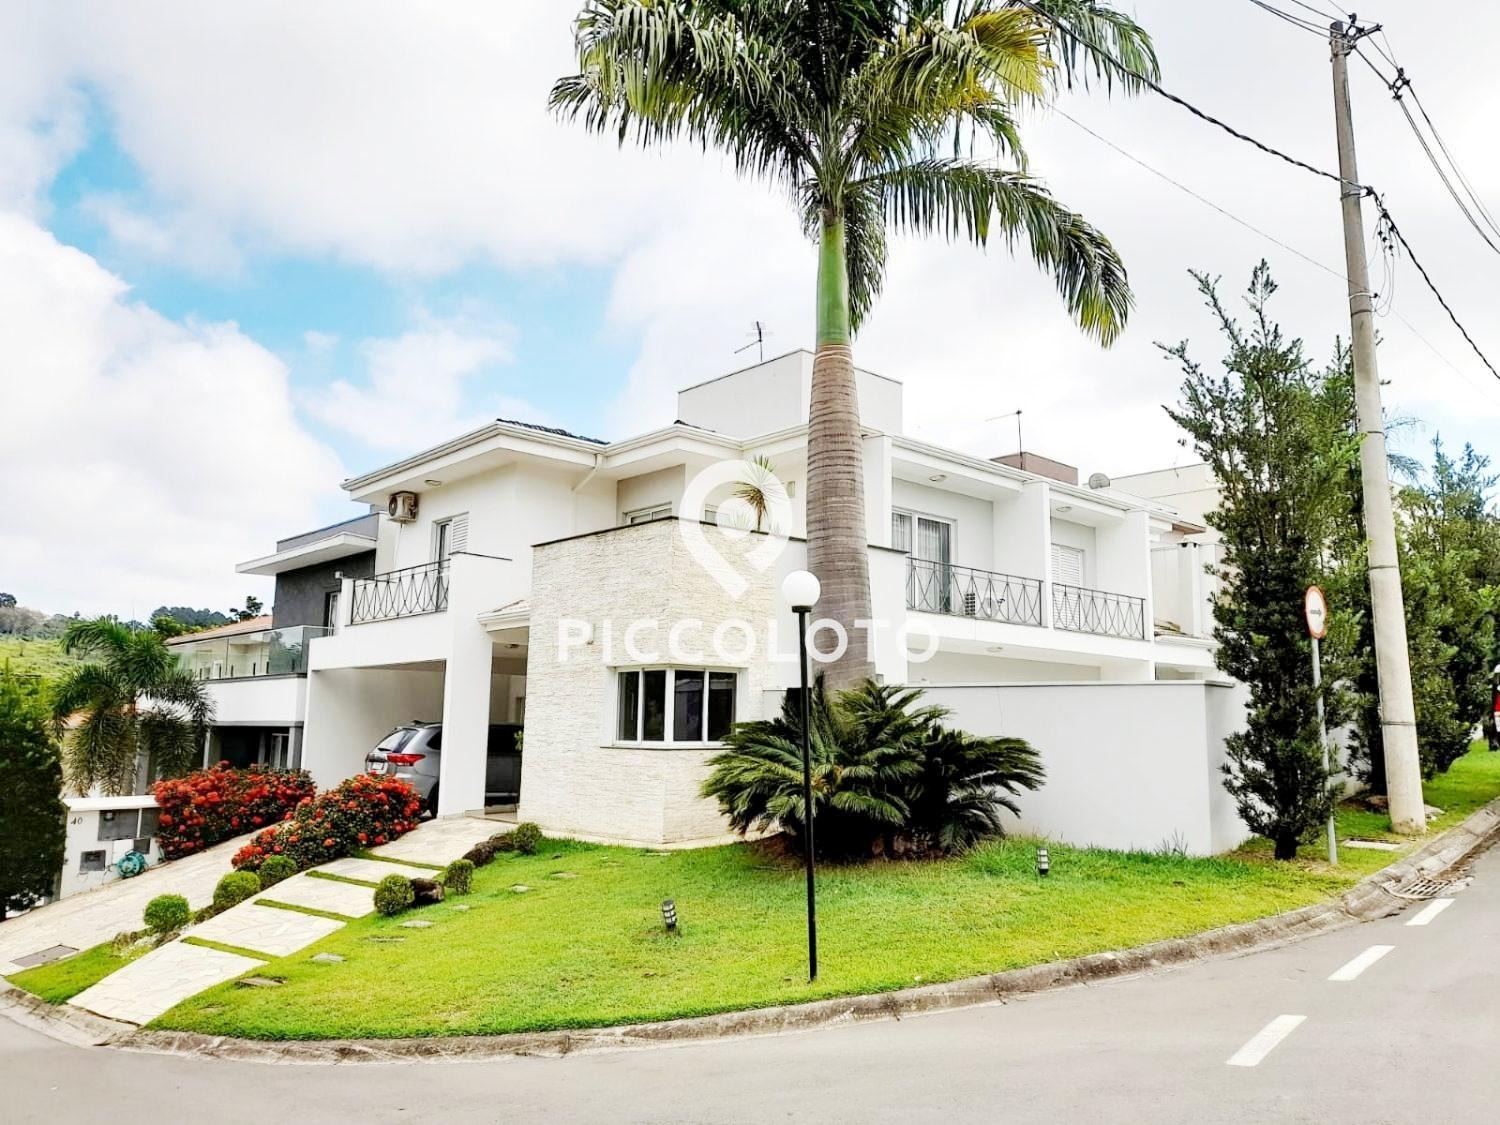 Piccoloto - Casa à venda no Parque Rural Fazenda Santa Cândida em Campinas